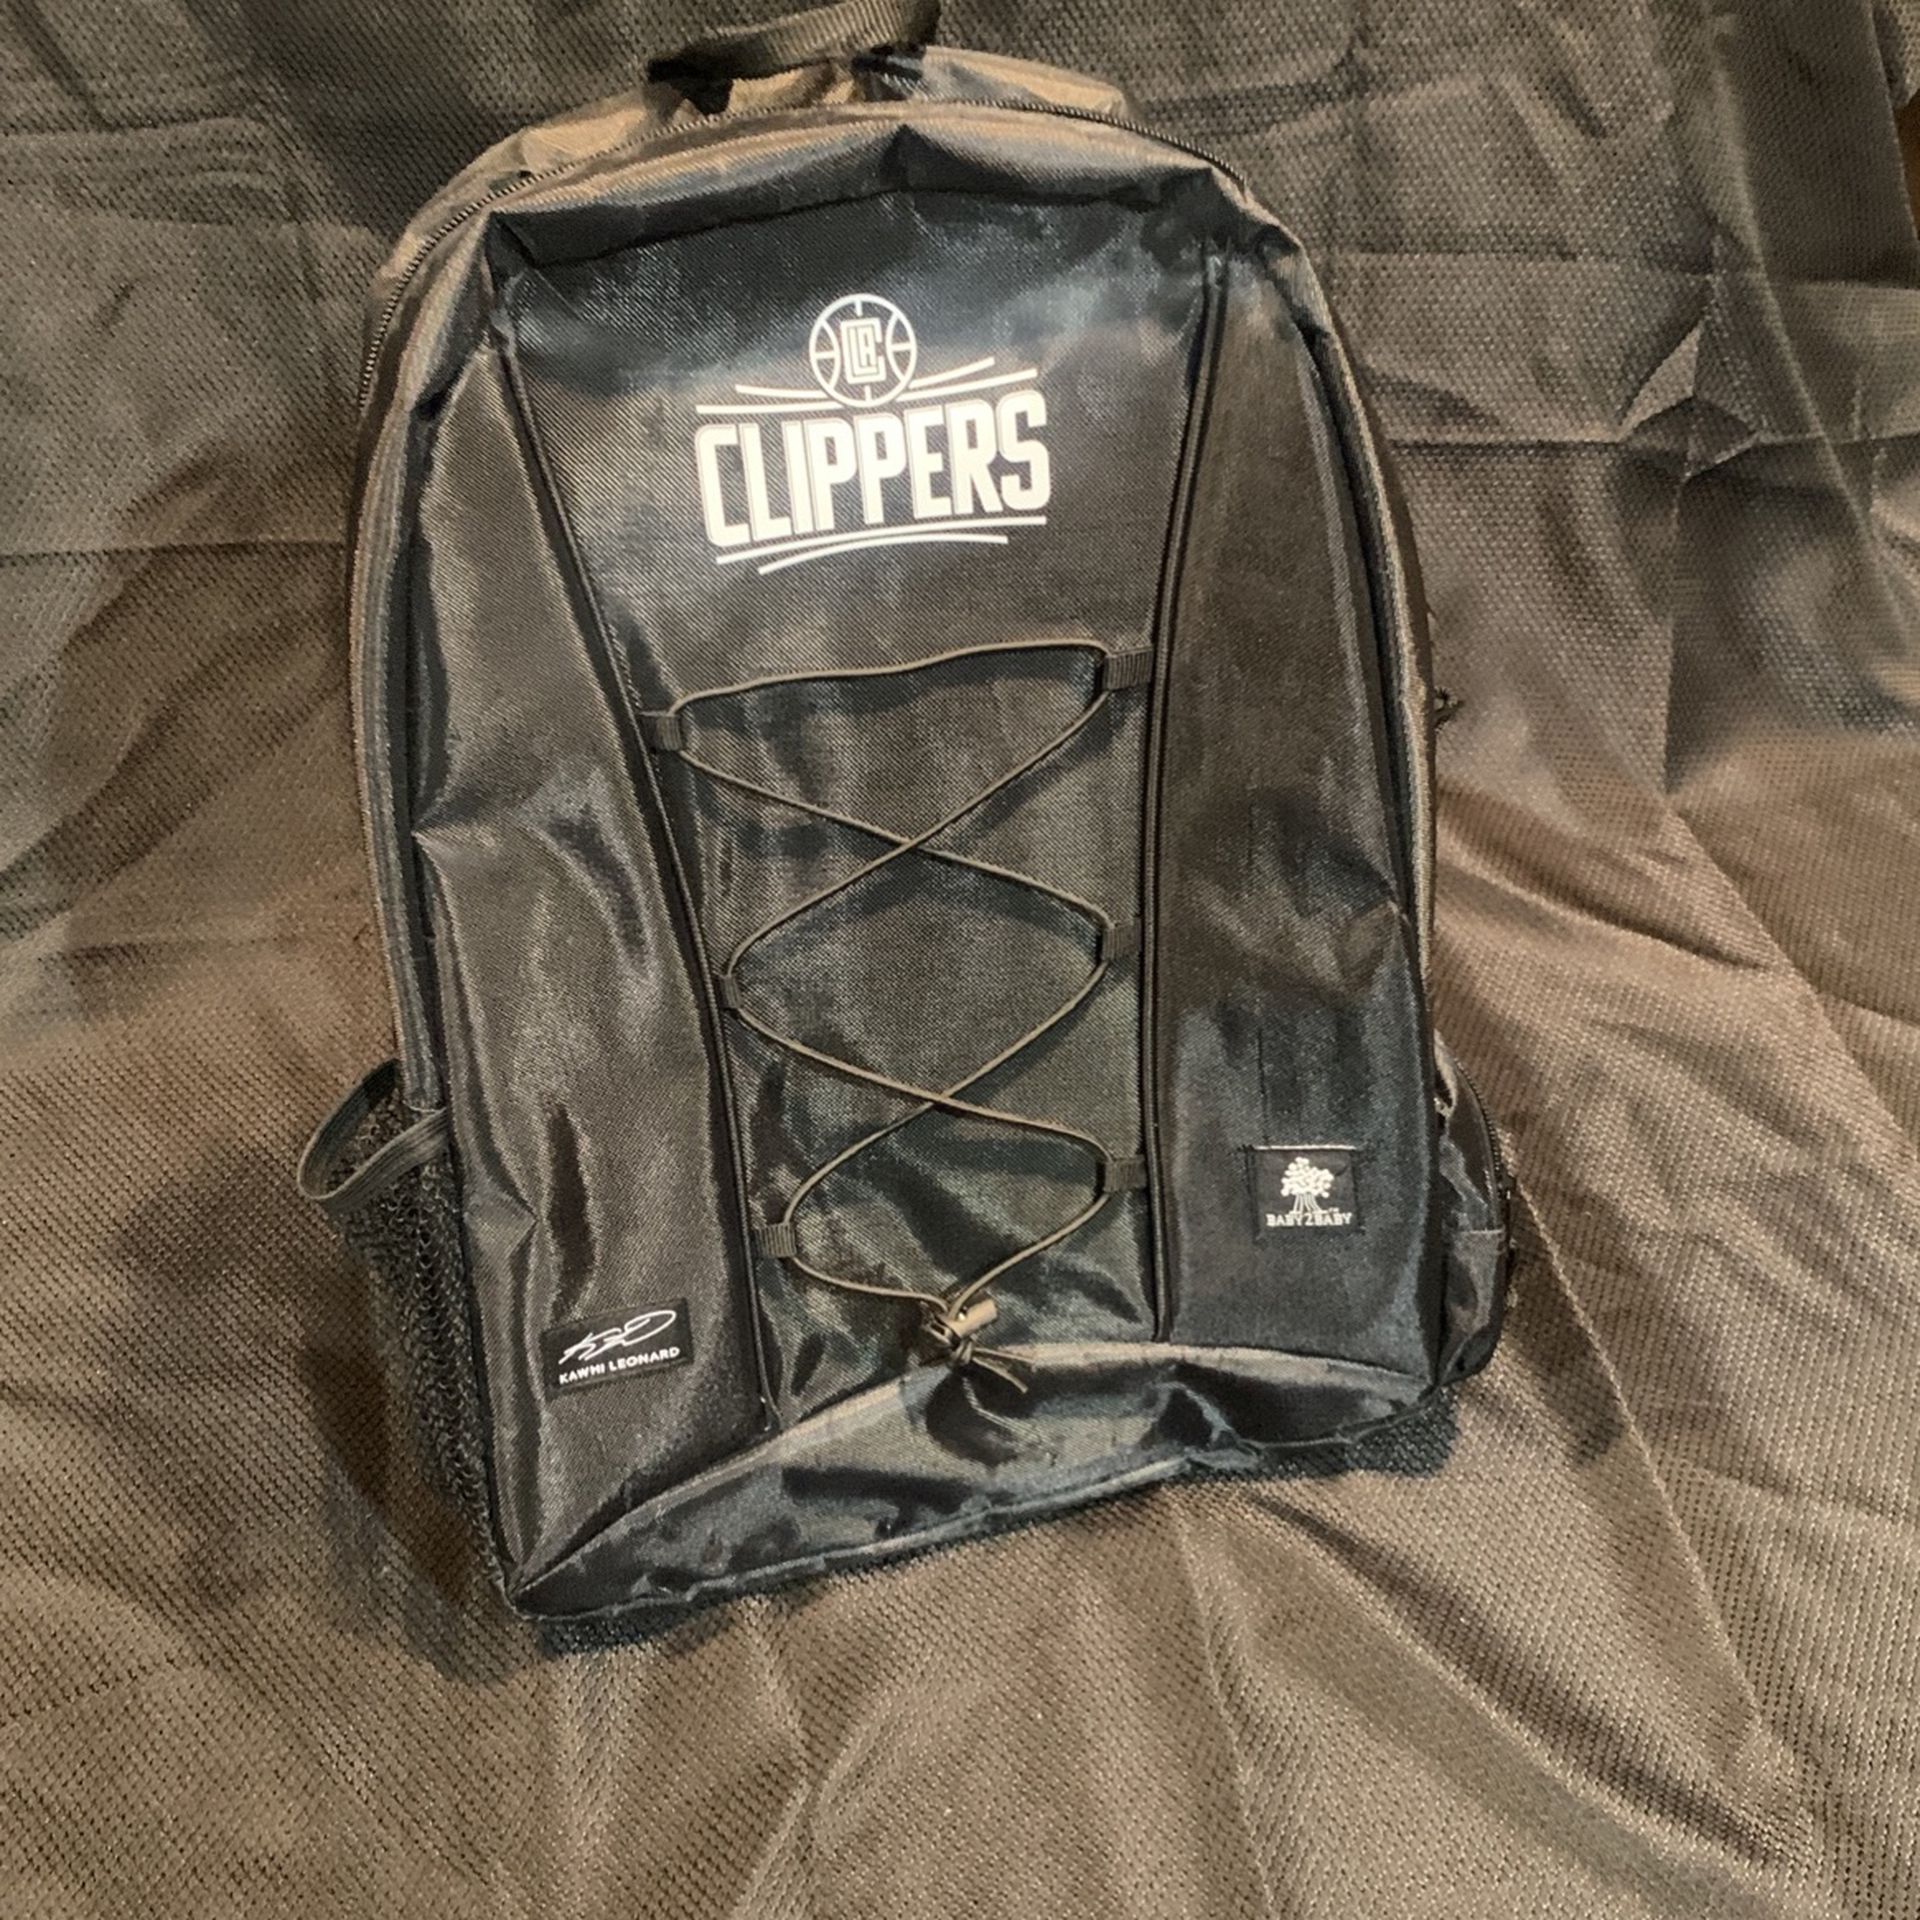 Clippers Backpack Kawhi Leonard